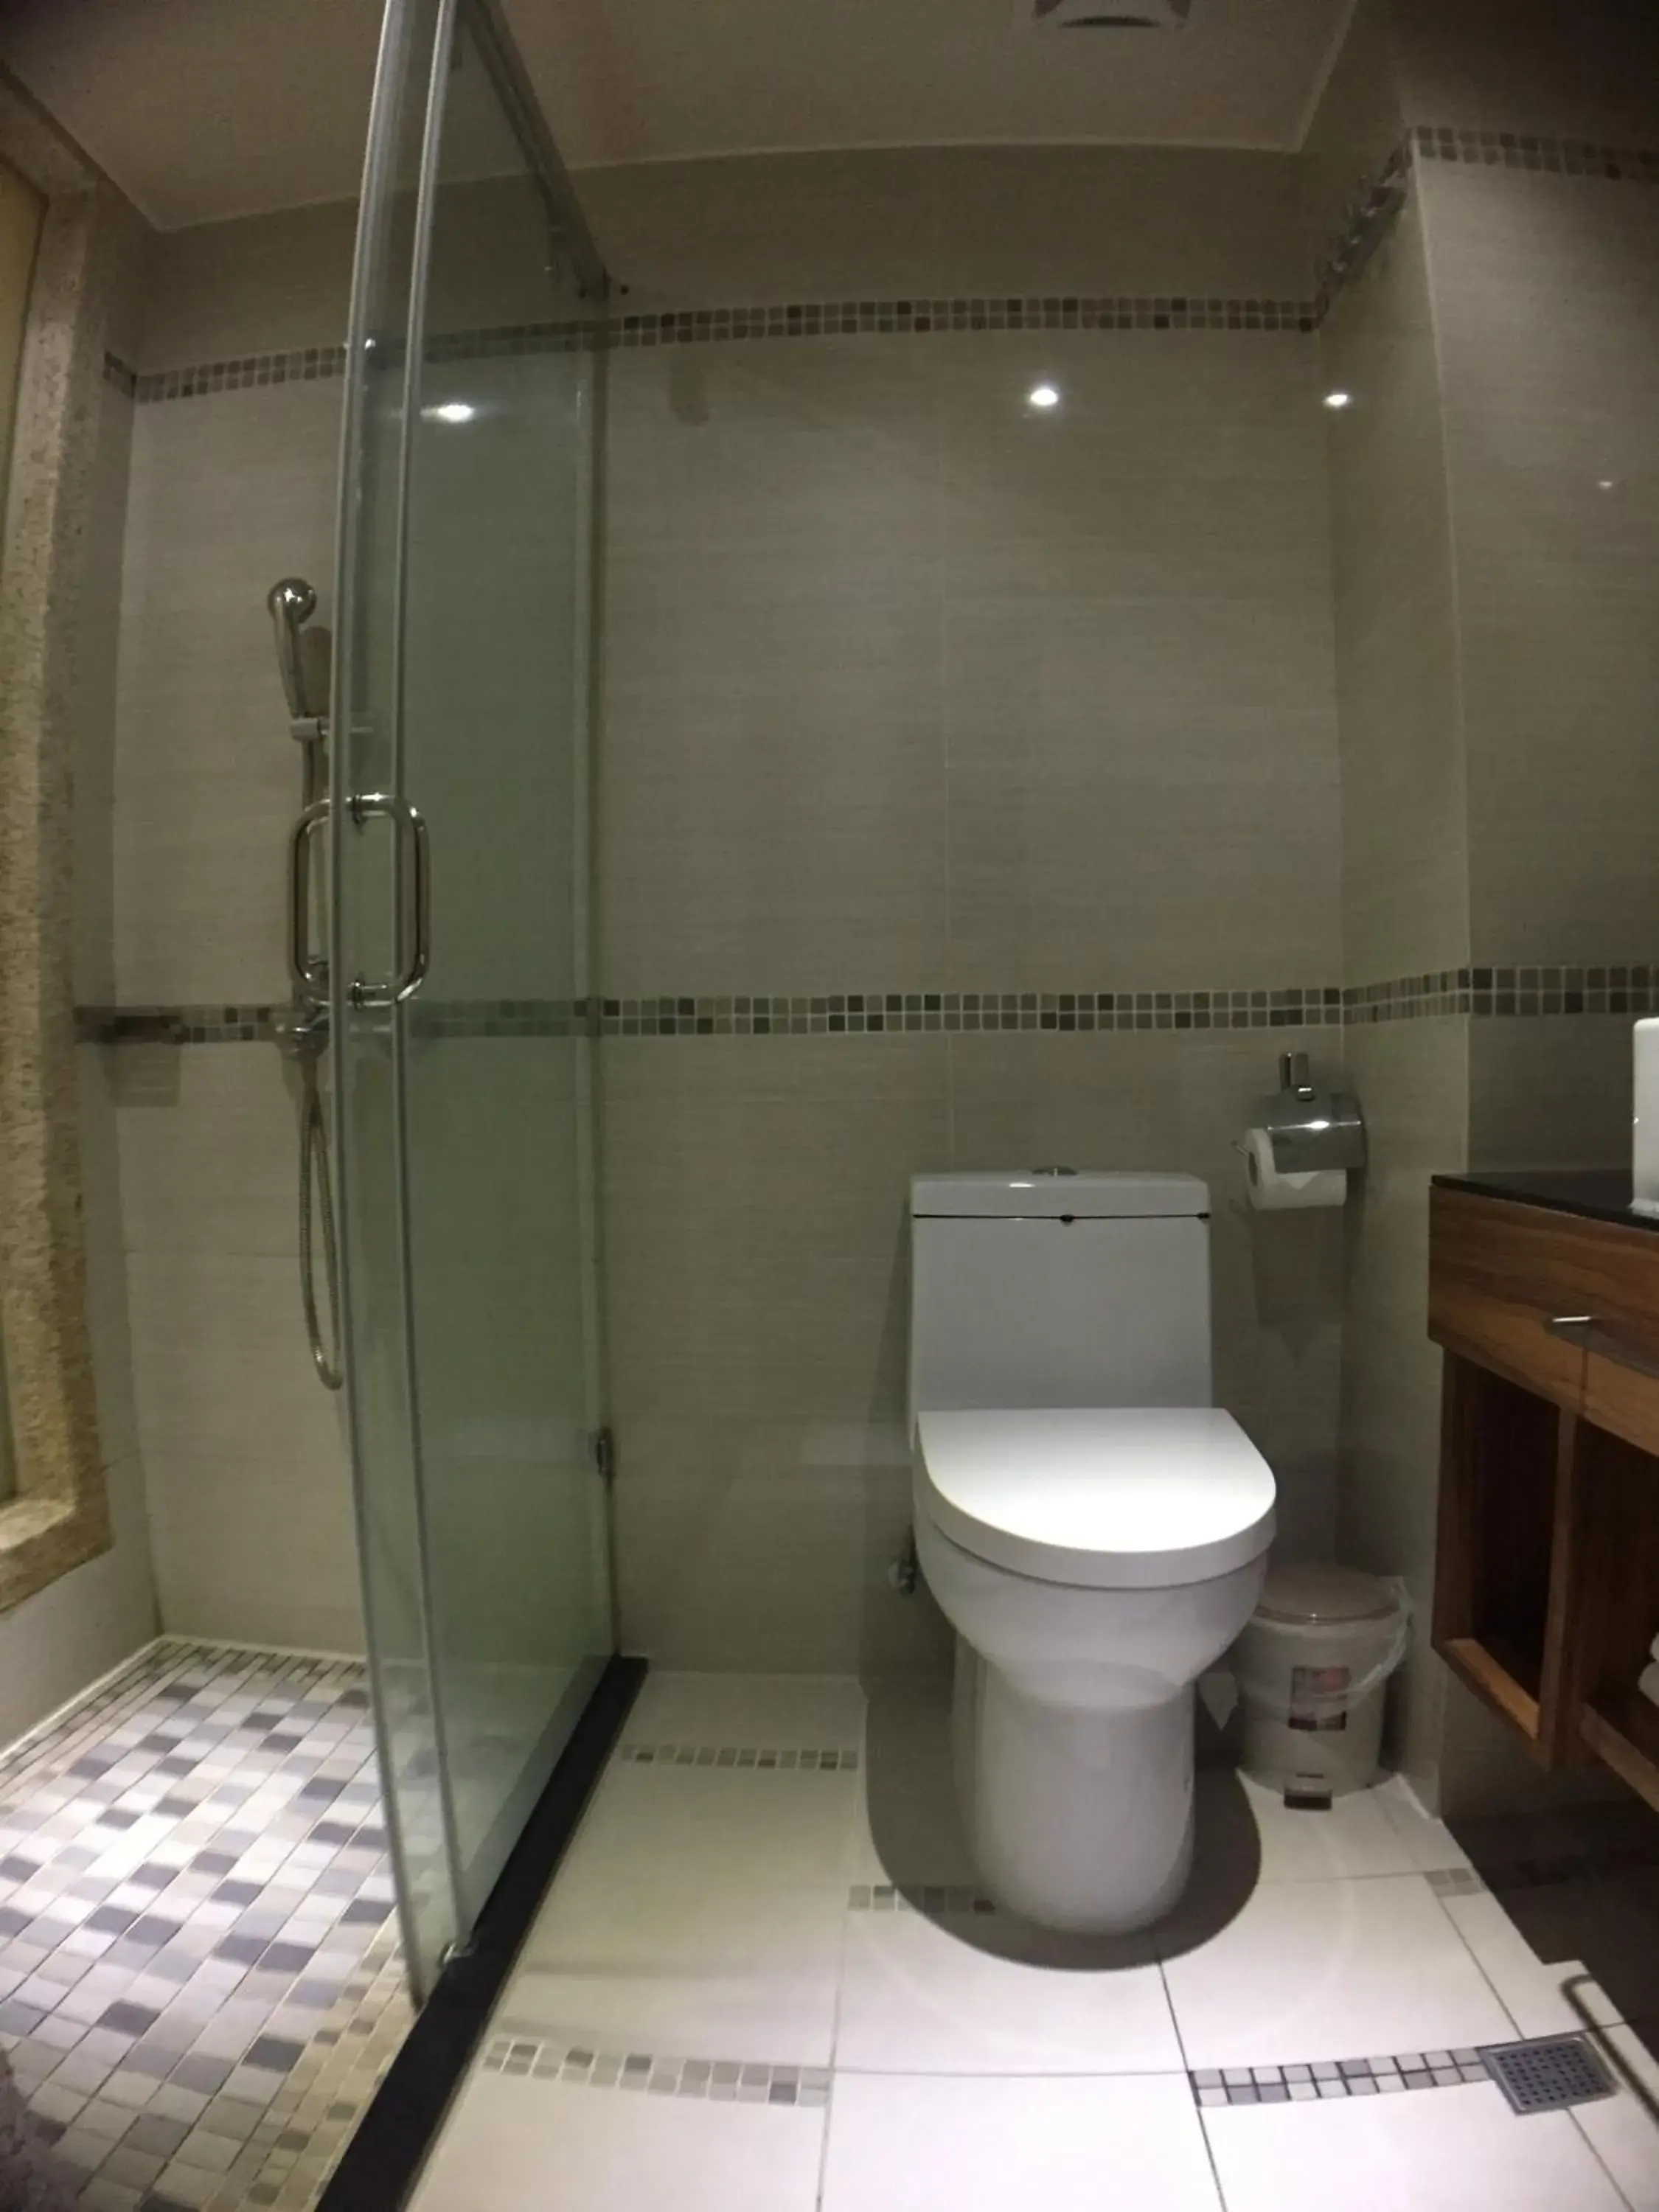 Bathroom in Paris Business Hotel